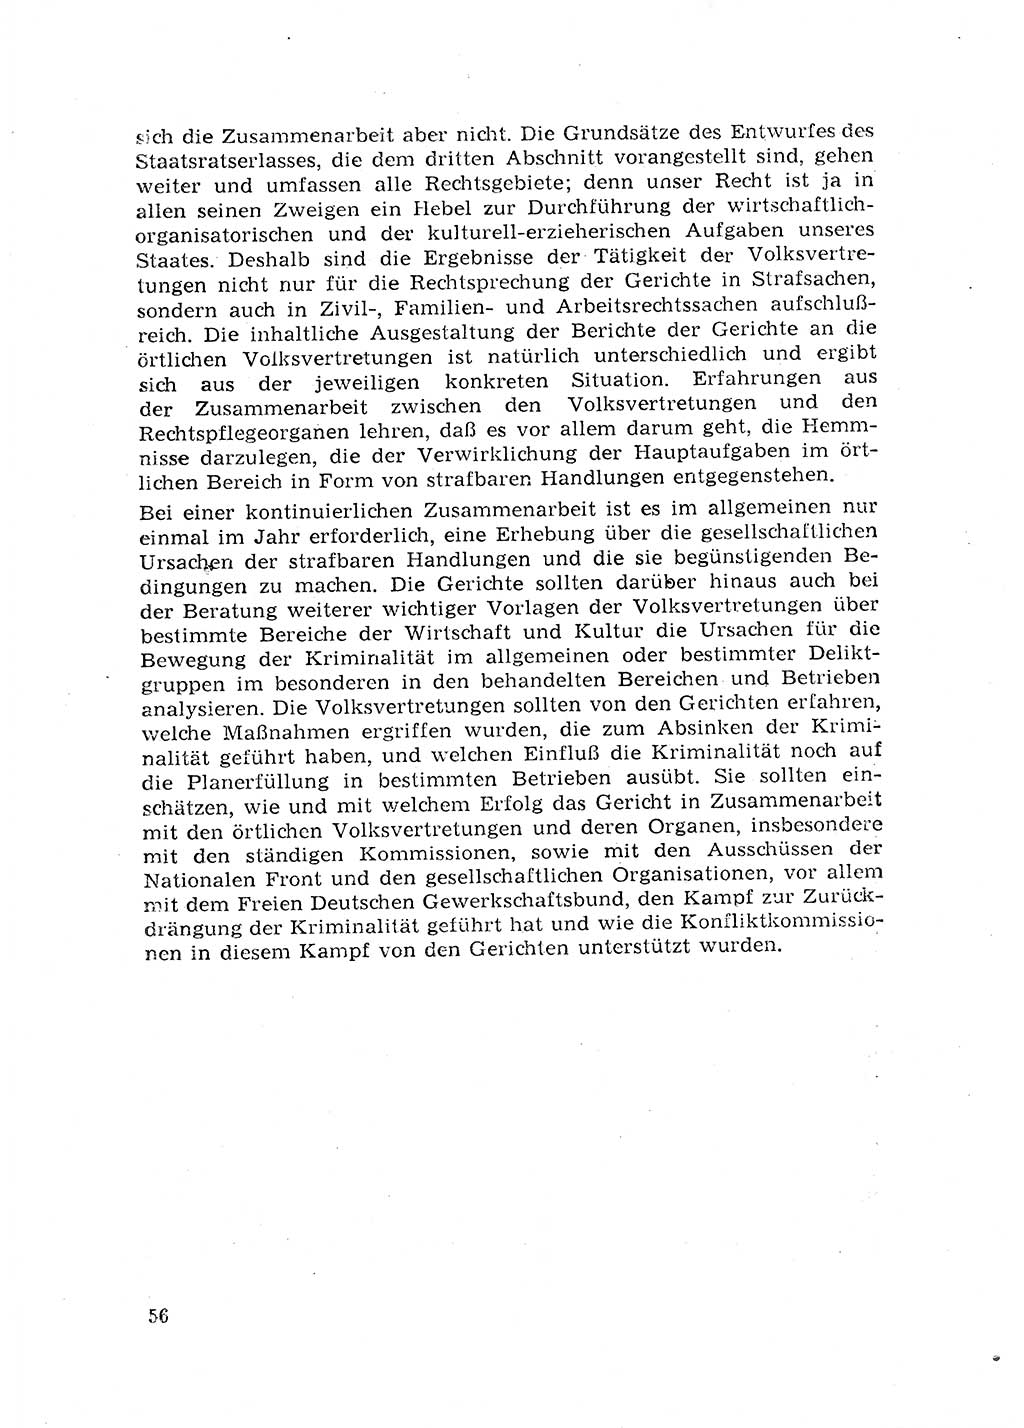 Rechtspflegeerlaß [Deutsche Demokratische Republik (DDR)] 1963, Seite 56 (R.-Pfl.-Erl. DDR 1963, S. 56)